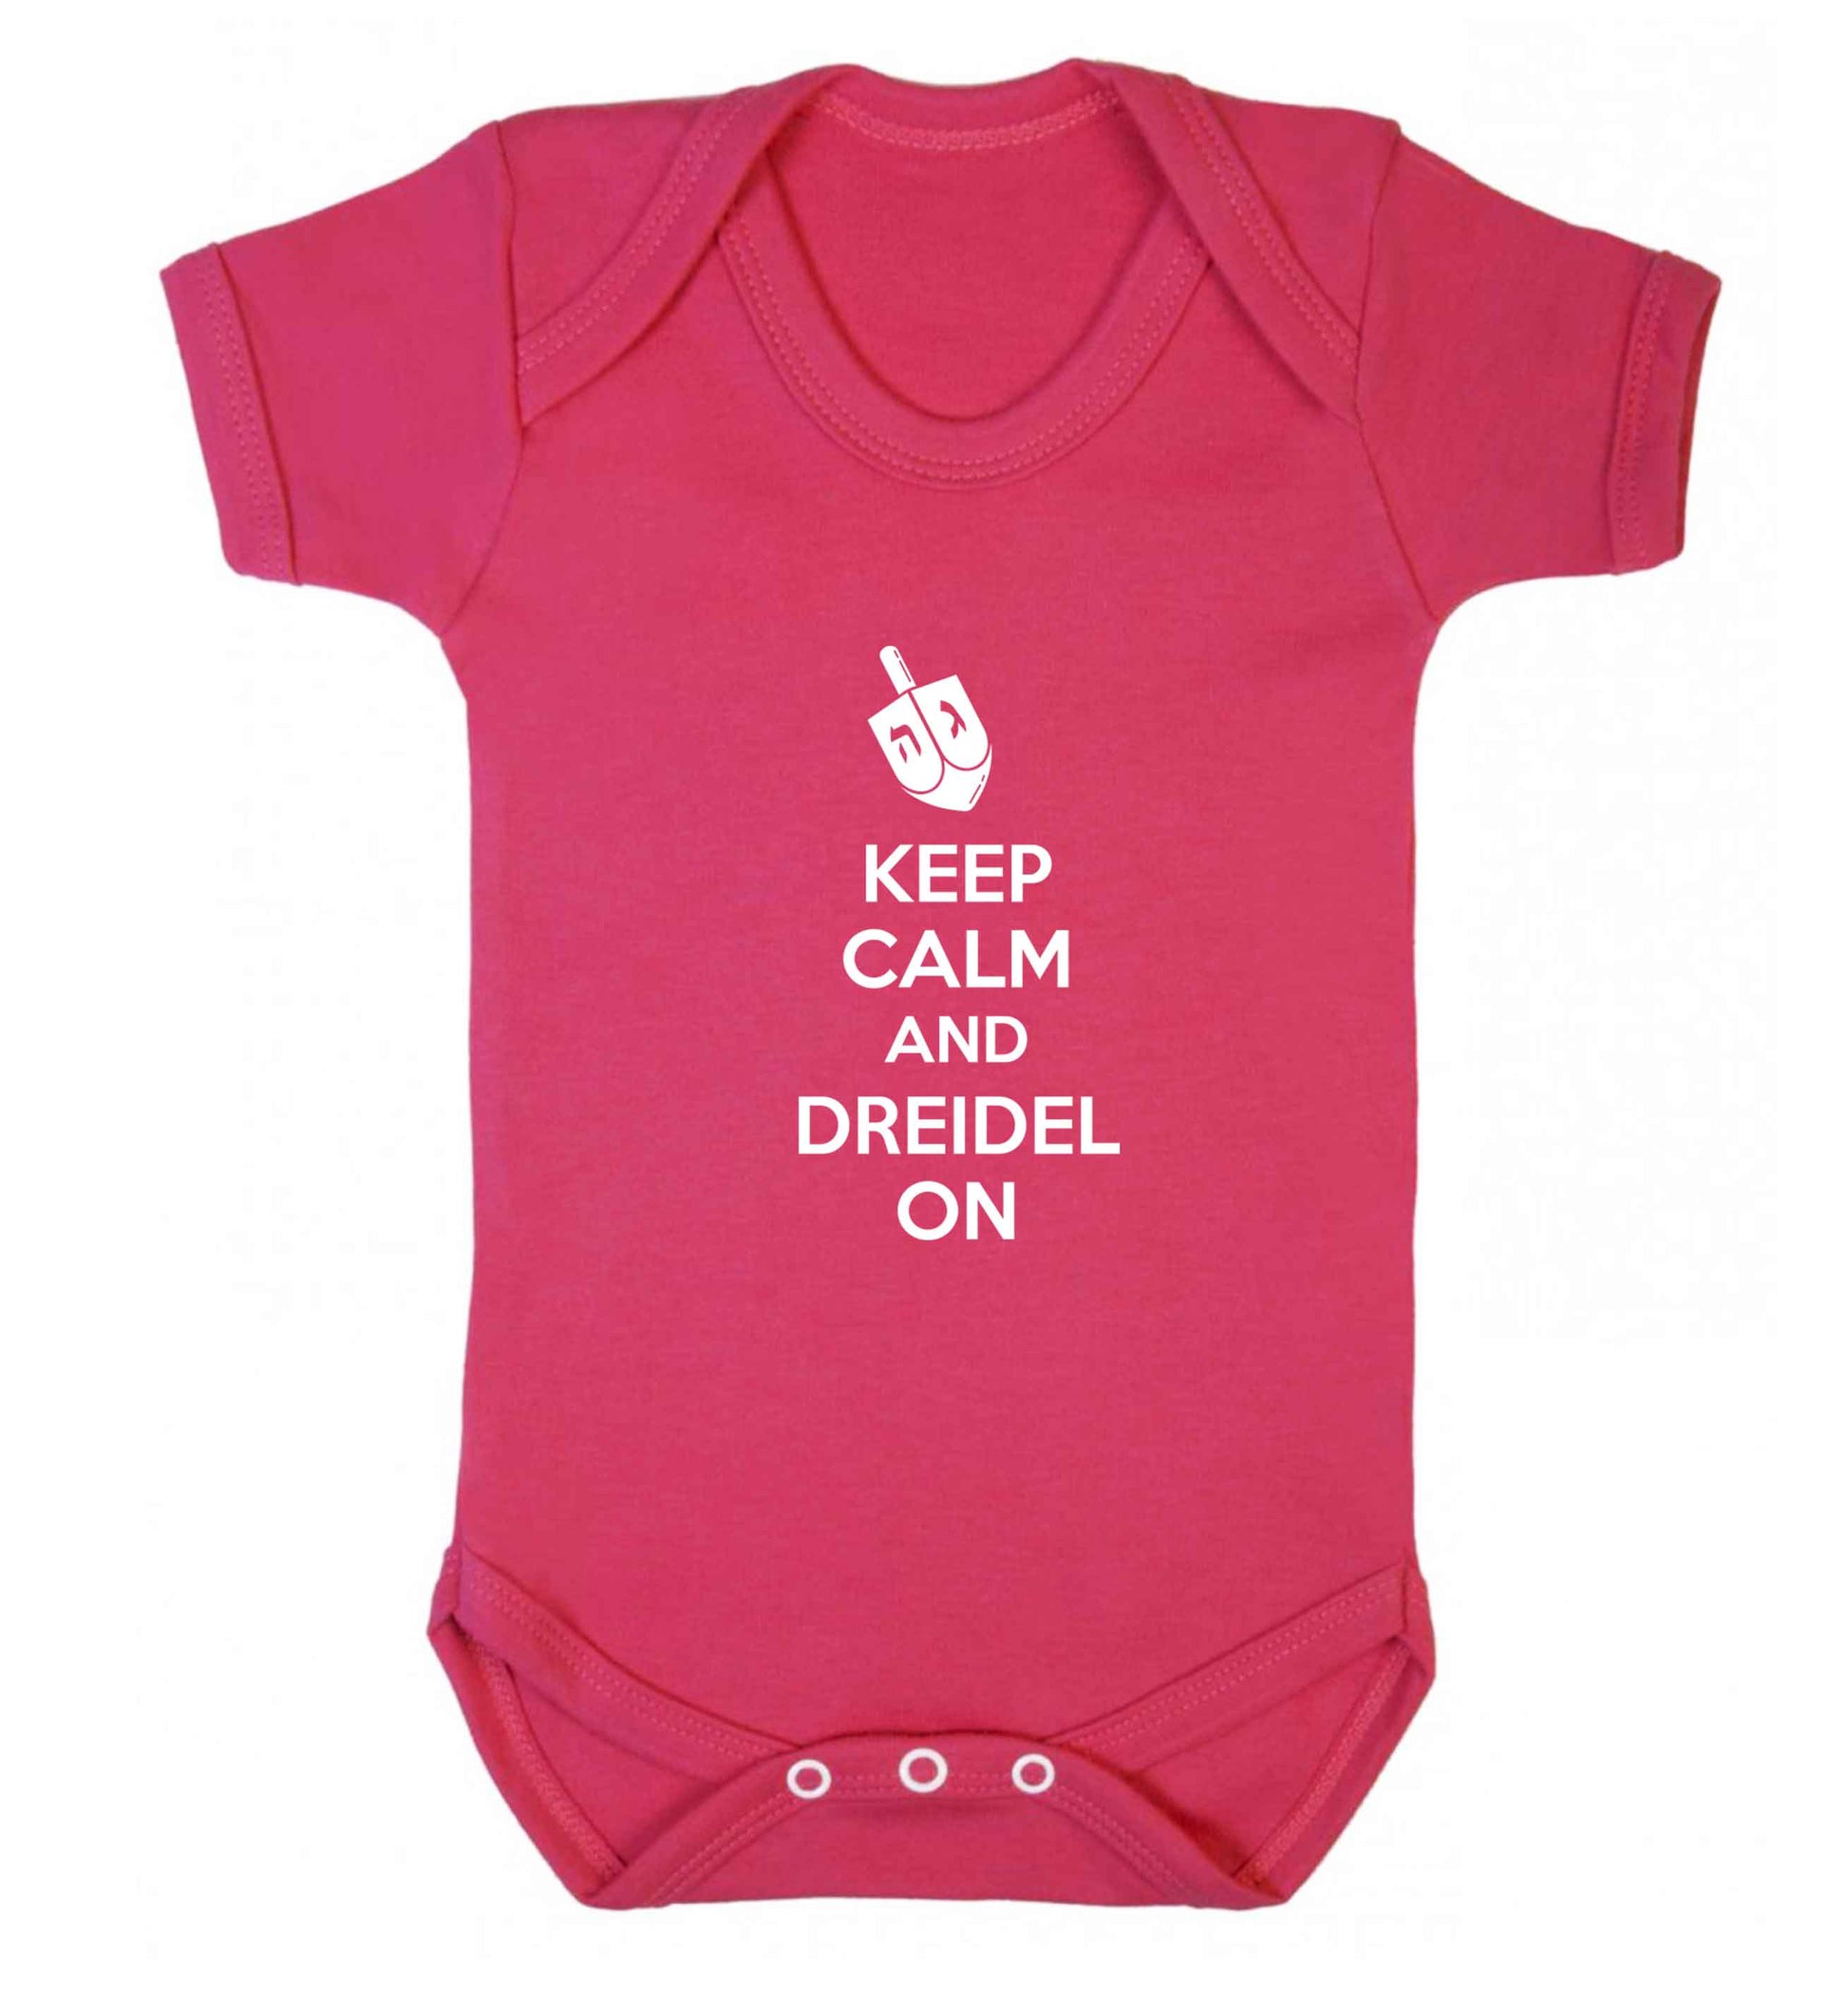 Keep calm and dreidel on baby vest dark pink 18-24 months